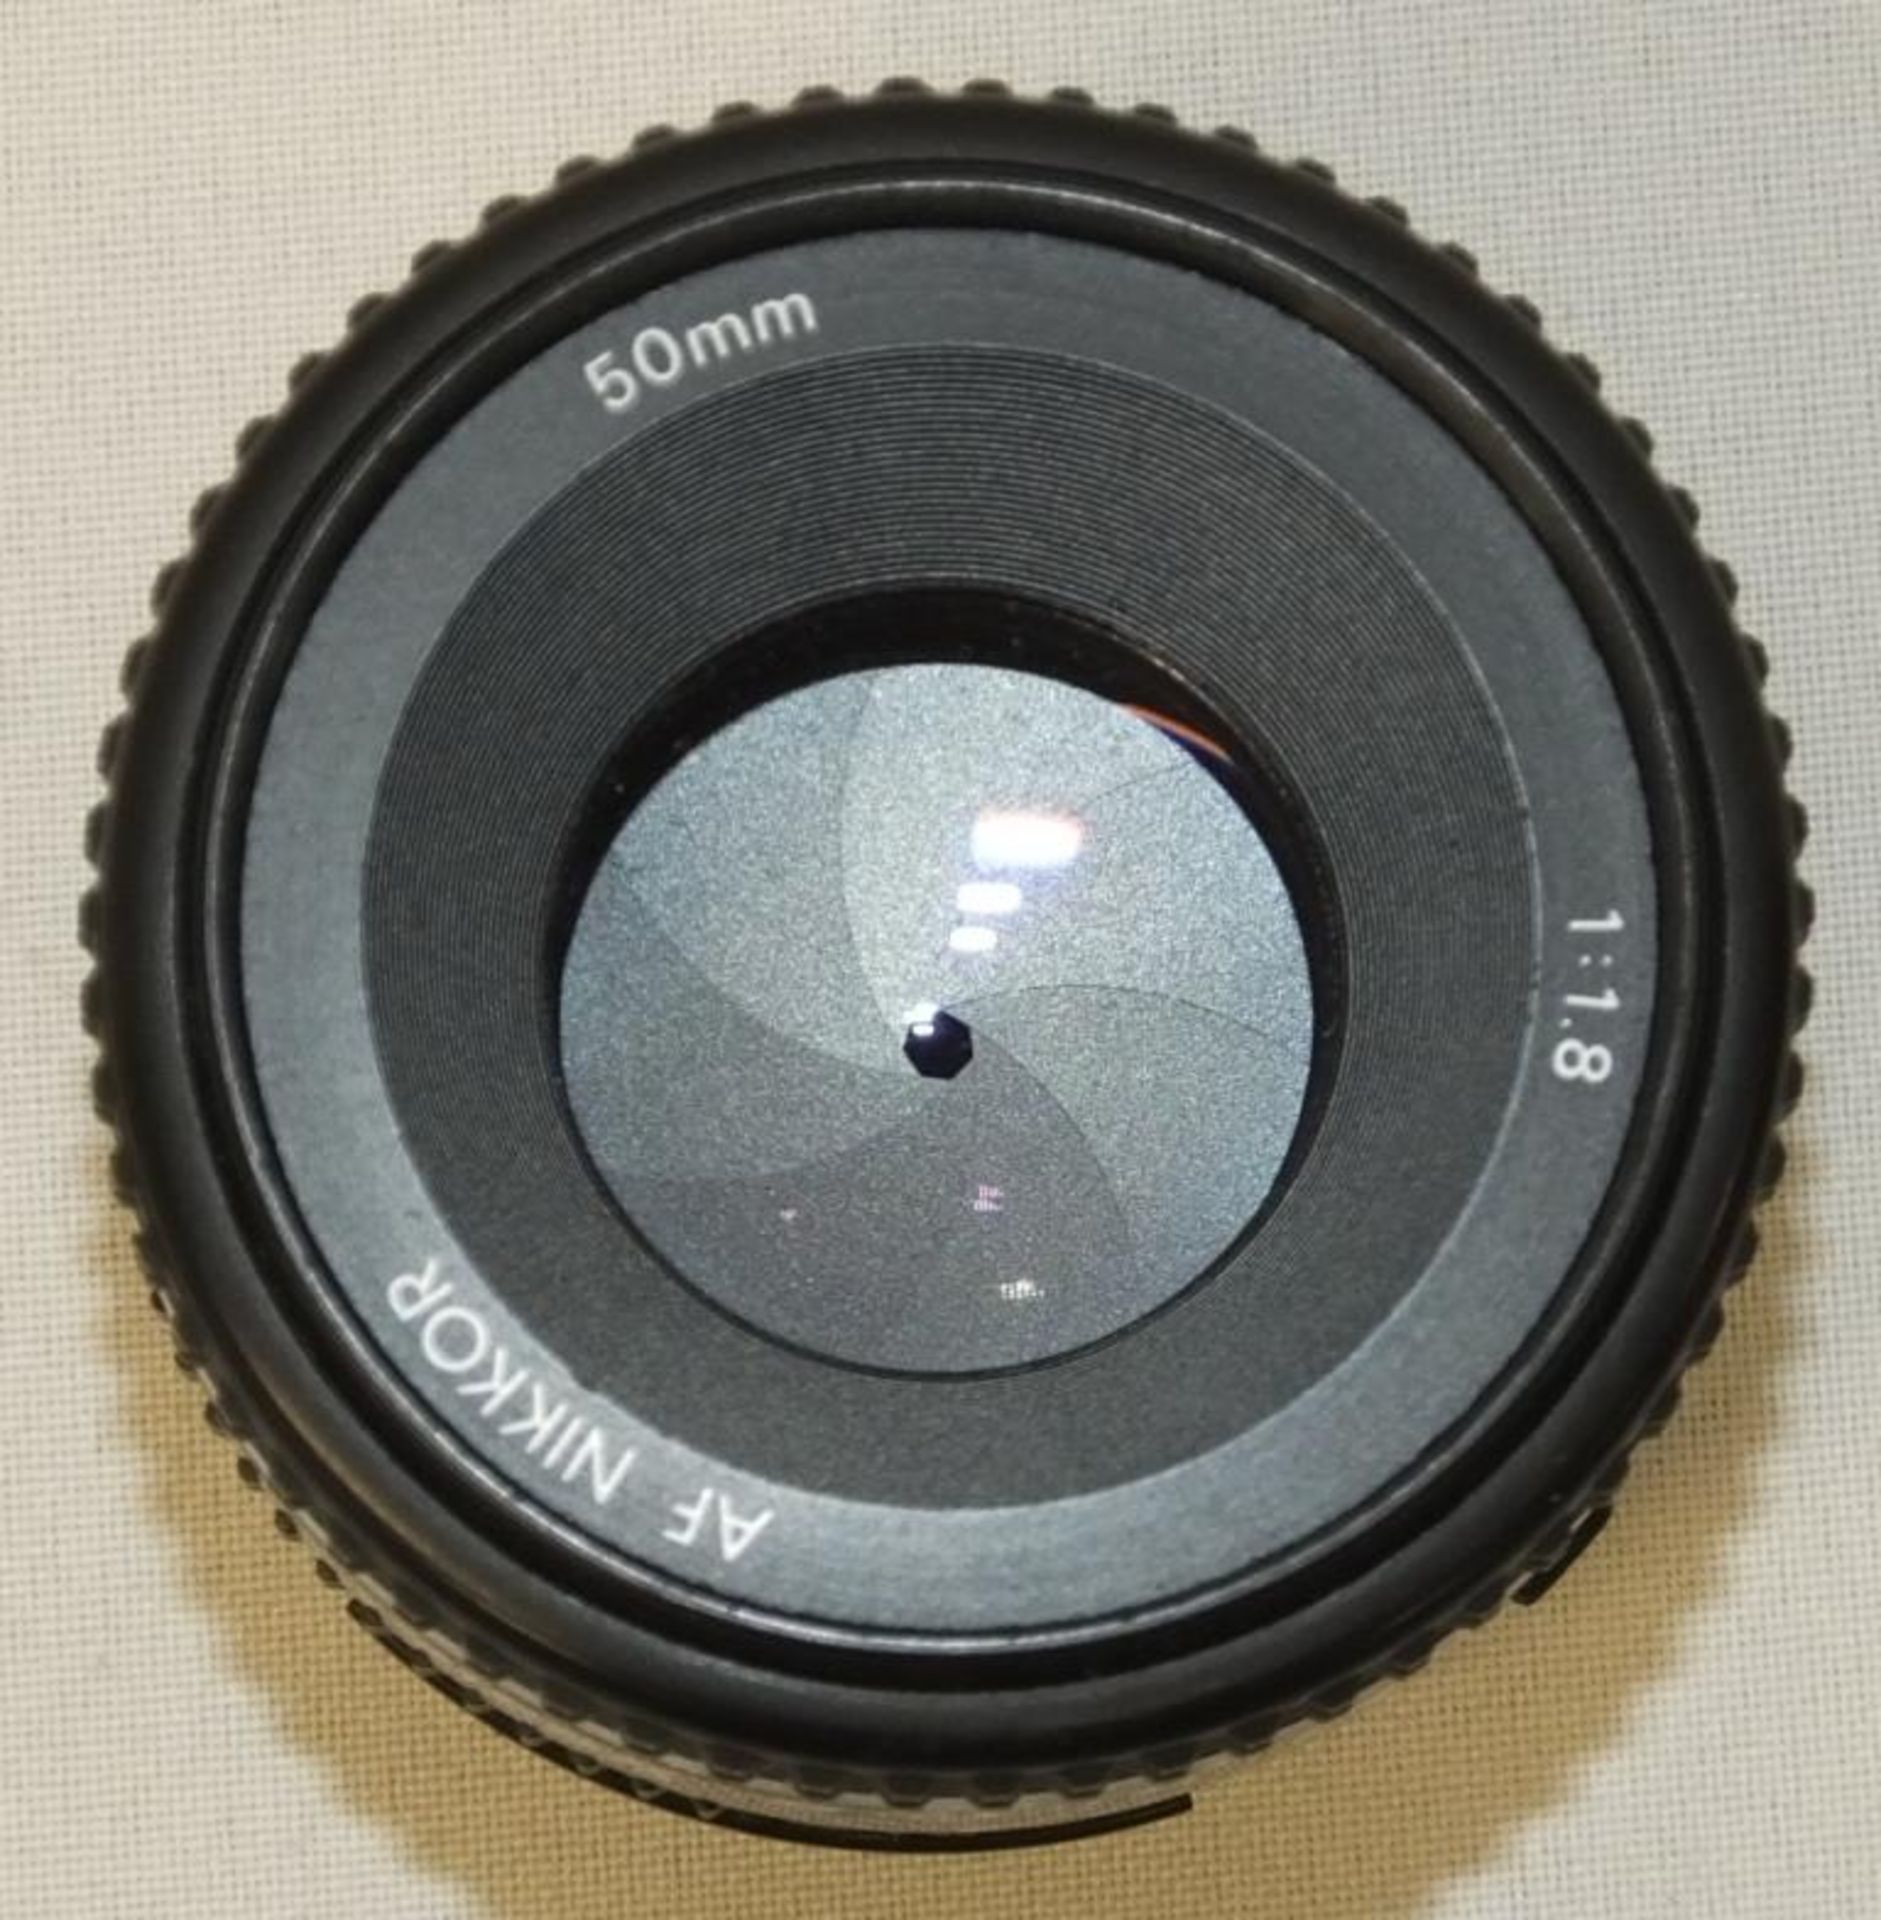 Nikon AF Nikkor 50mm - 1:1.8 Lens - Serial No. 4289700 with Nikon L37c 52mm Filter - Image 3 of 4